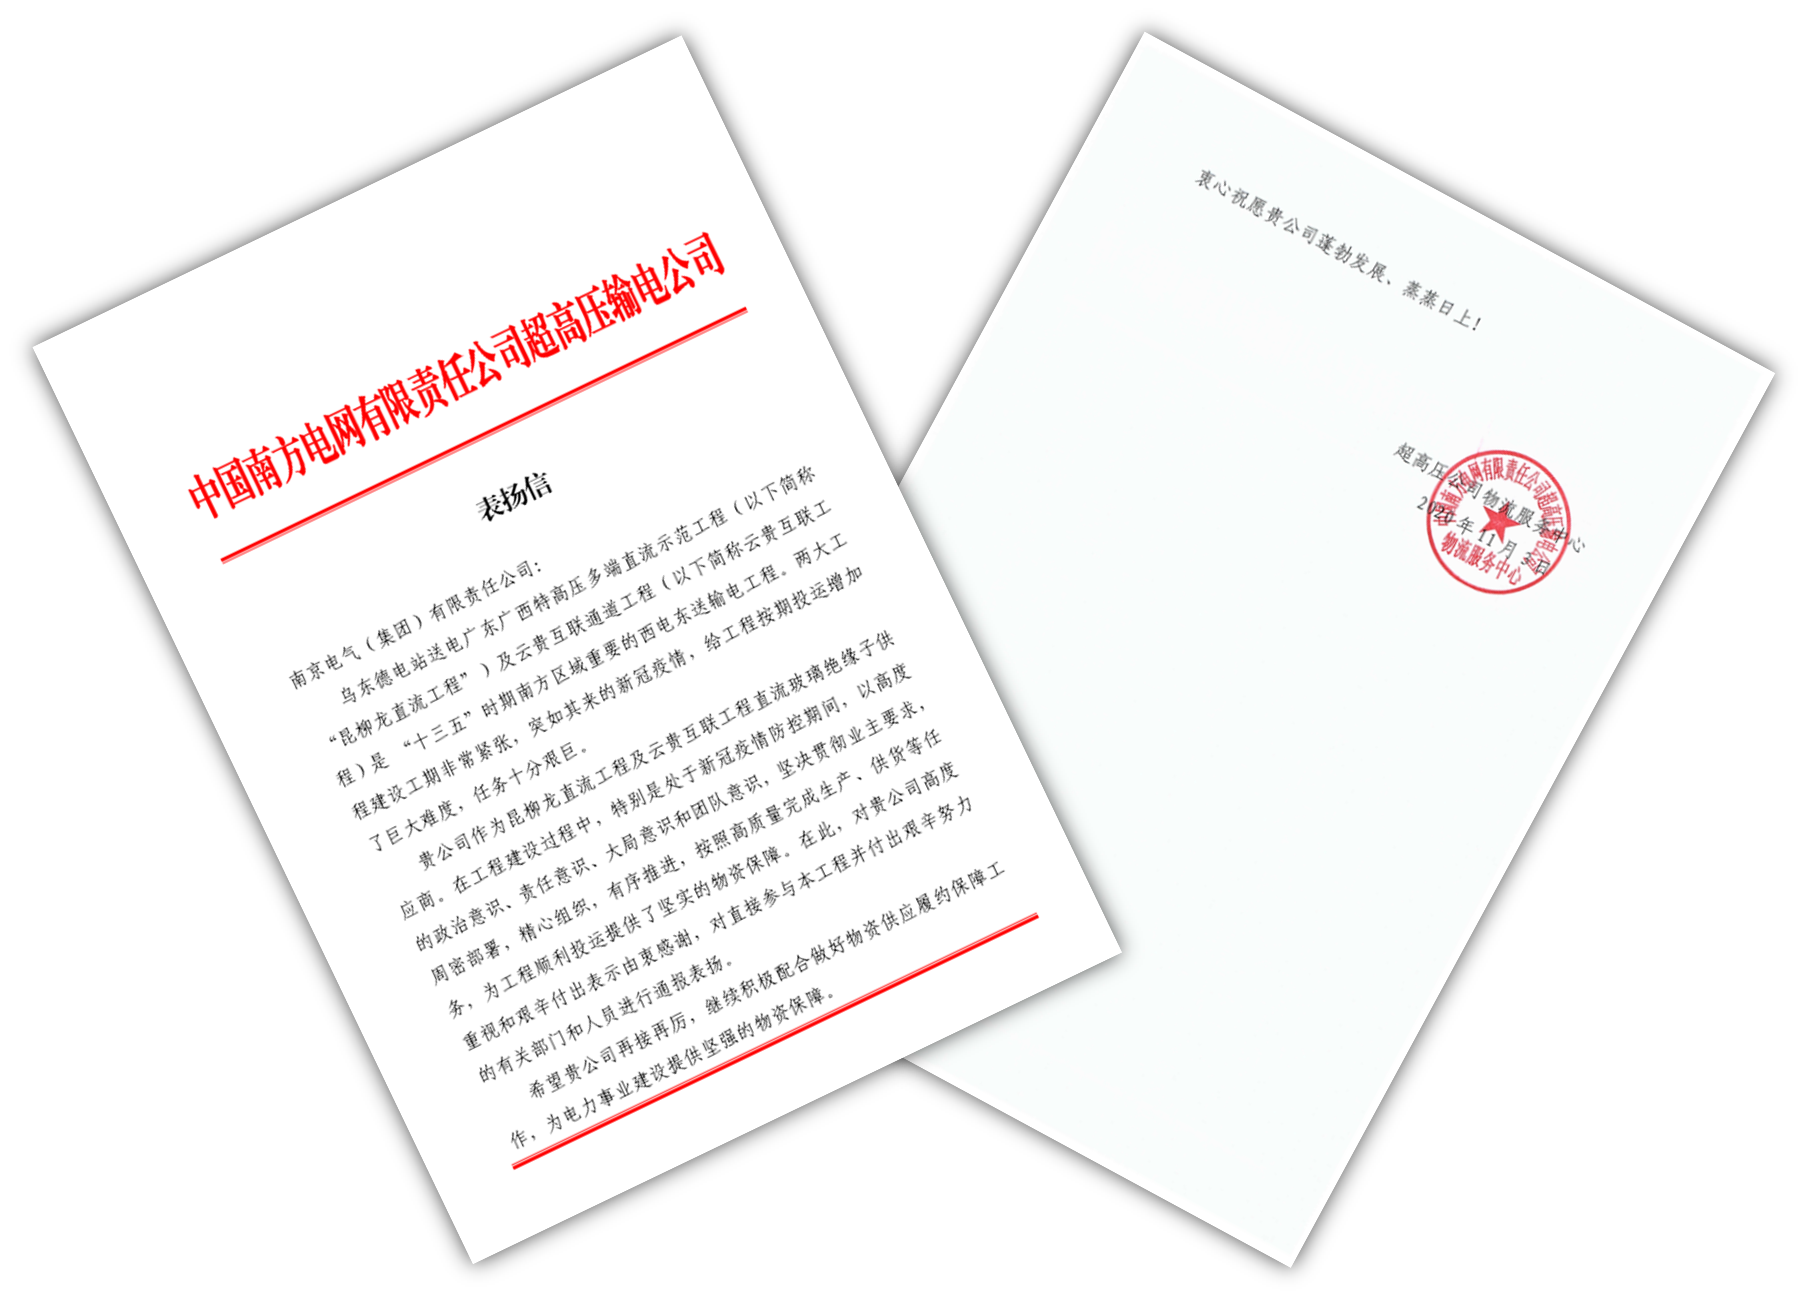 南网超高压公司向南京电气发来表扬信